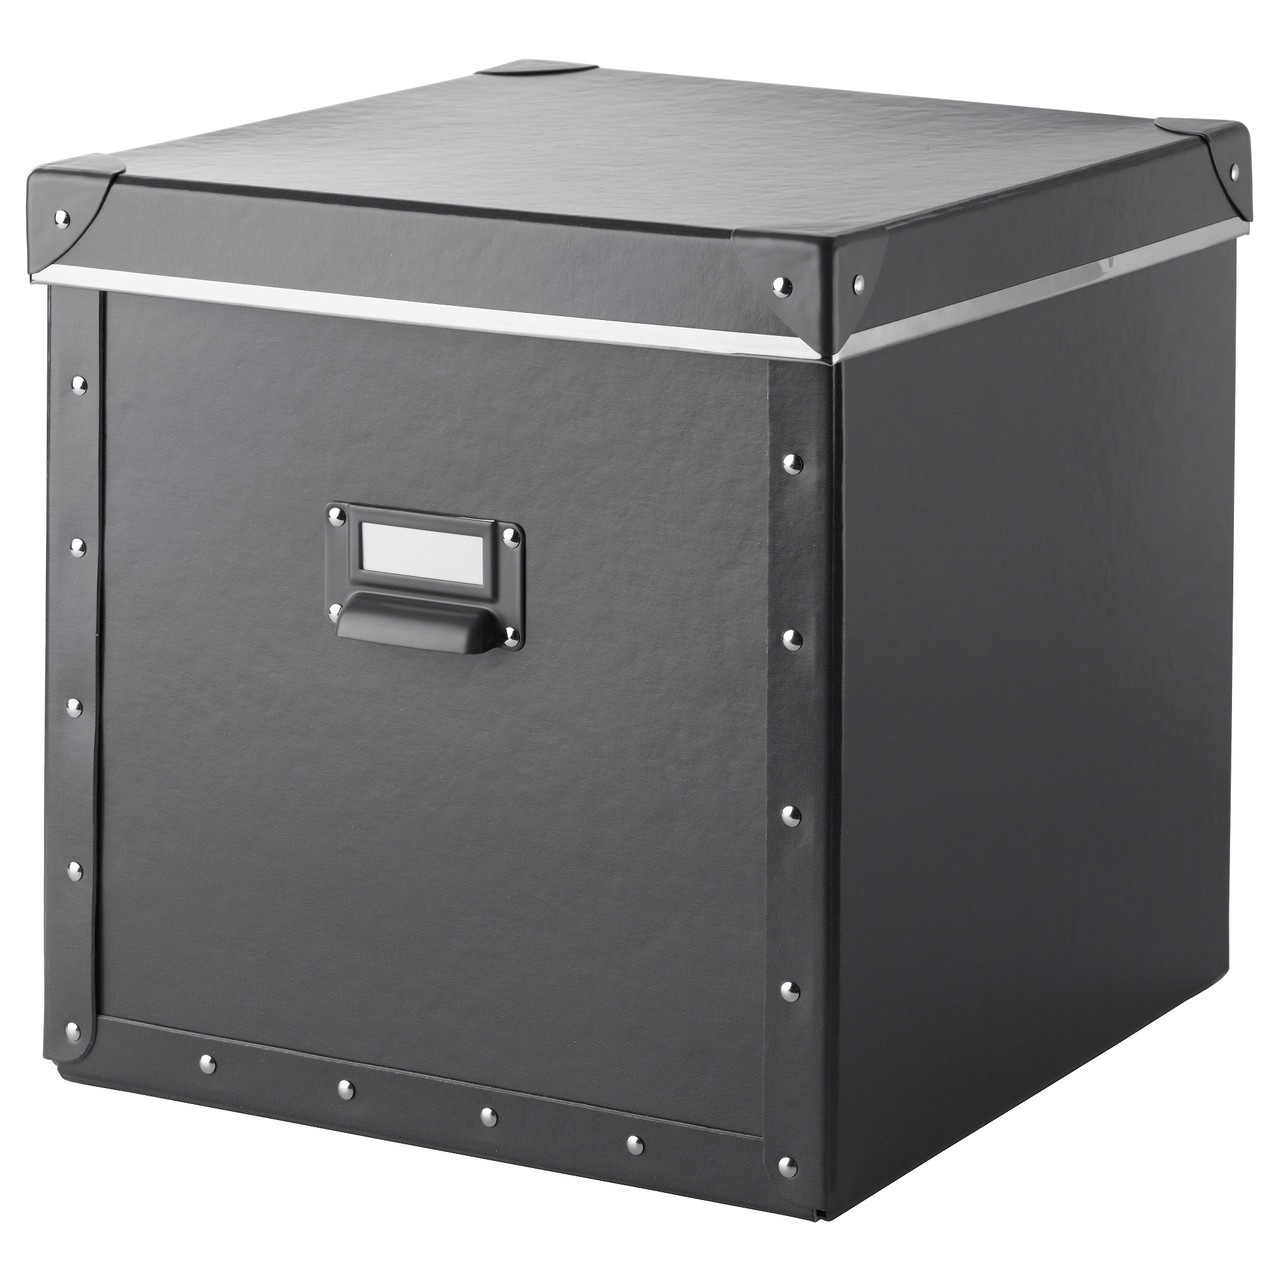 ФЬЕЛЛА Коробка с крышкой, темно-серый, 30x30x30 см, 90374537, IKEA, ИК